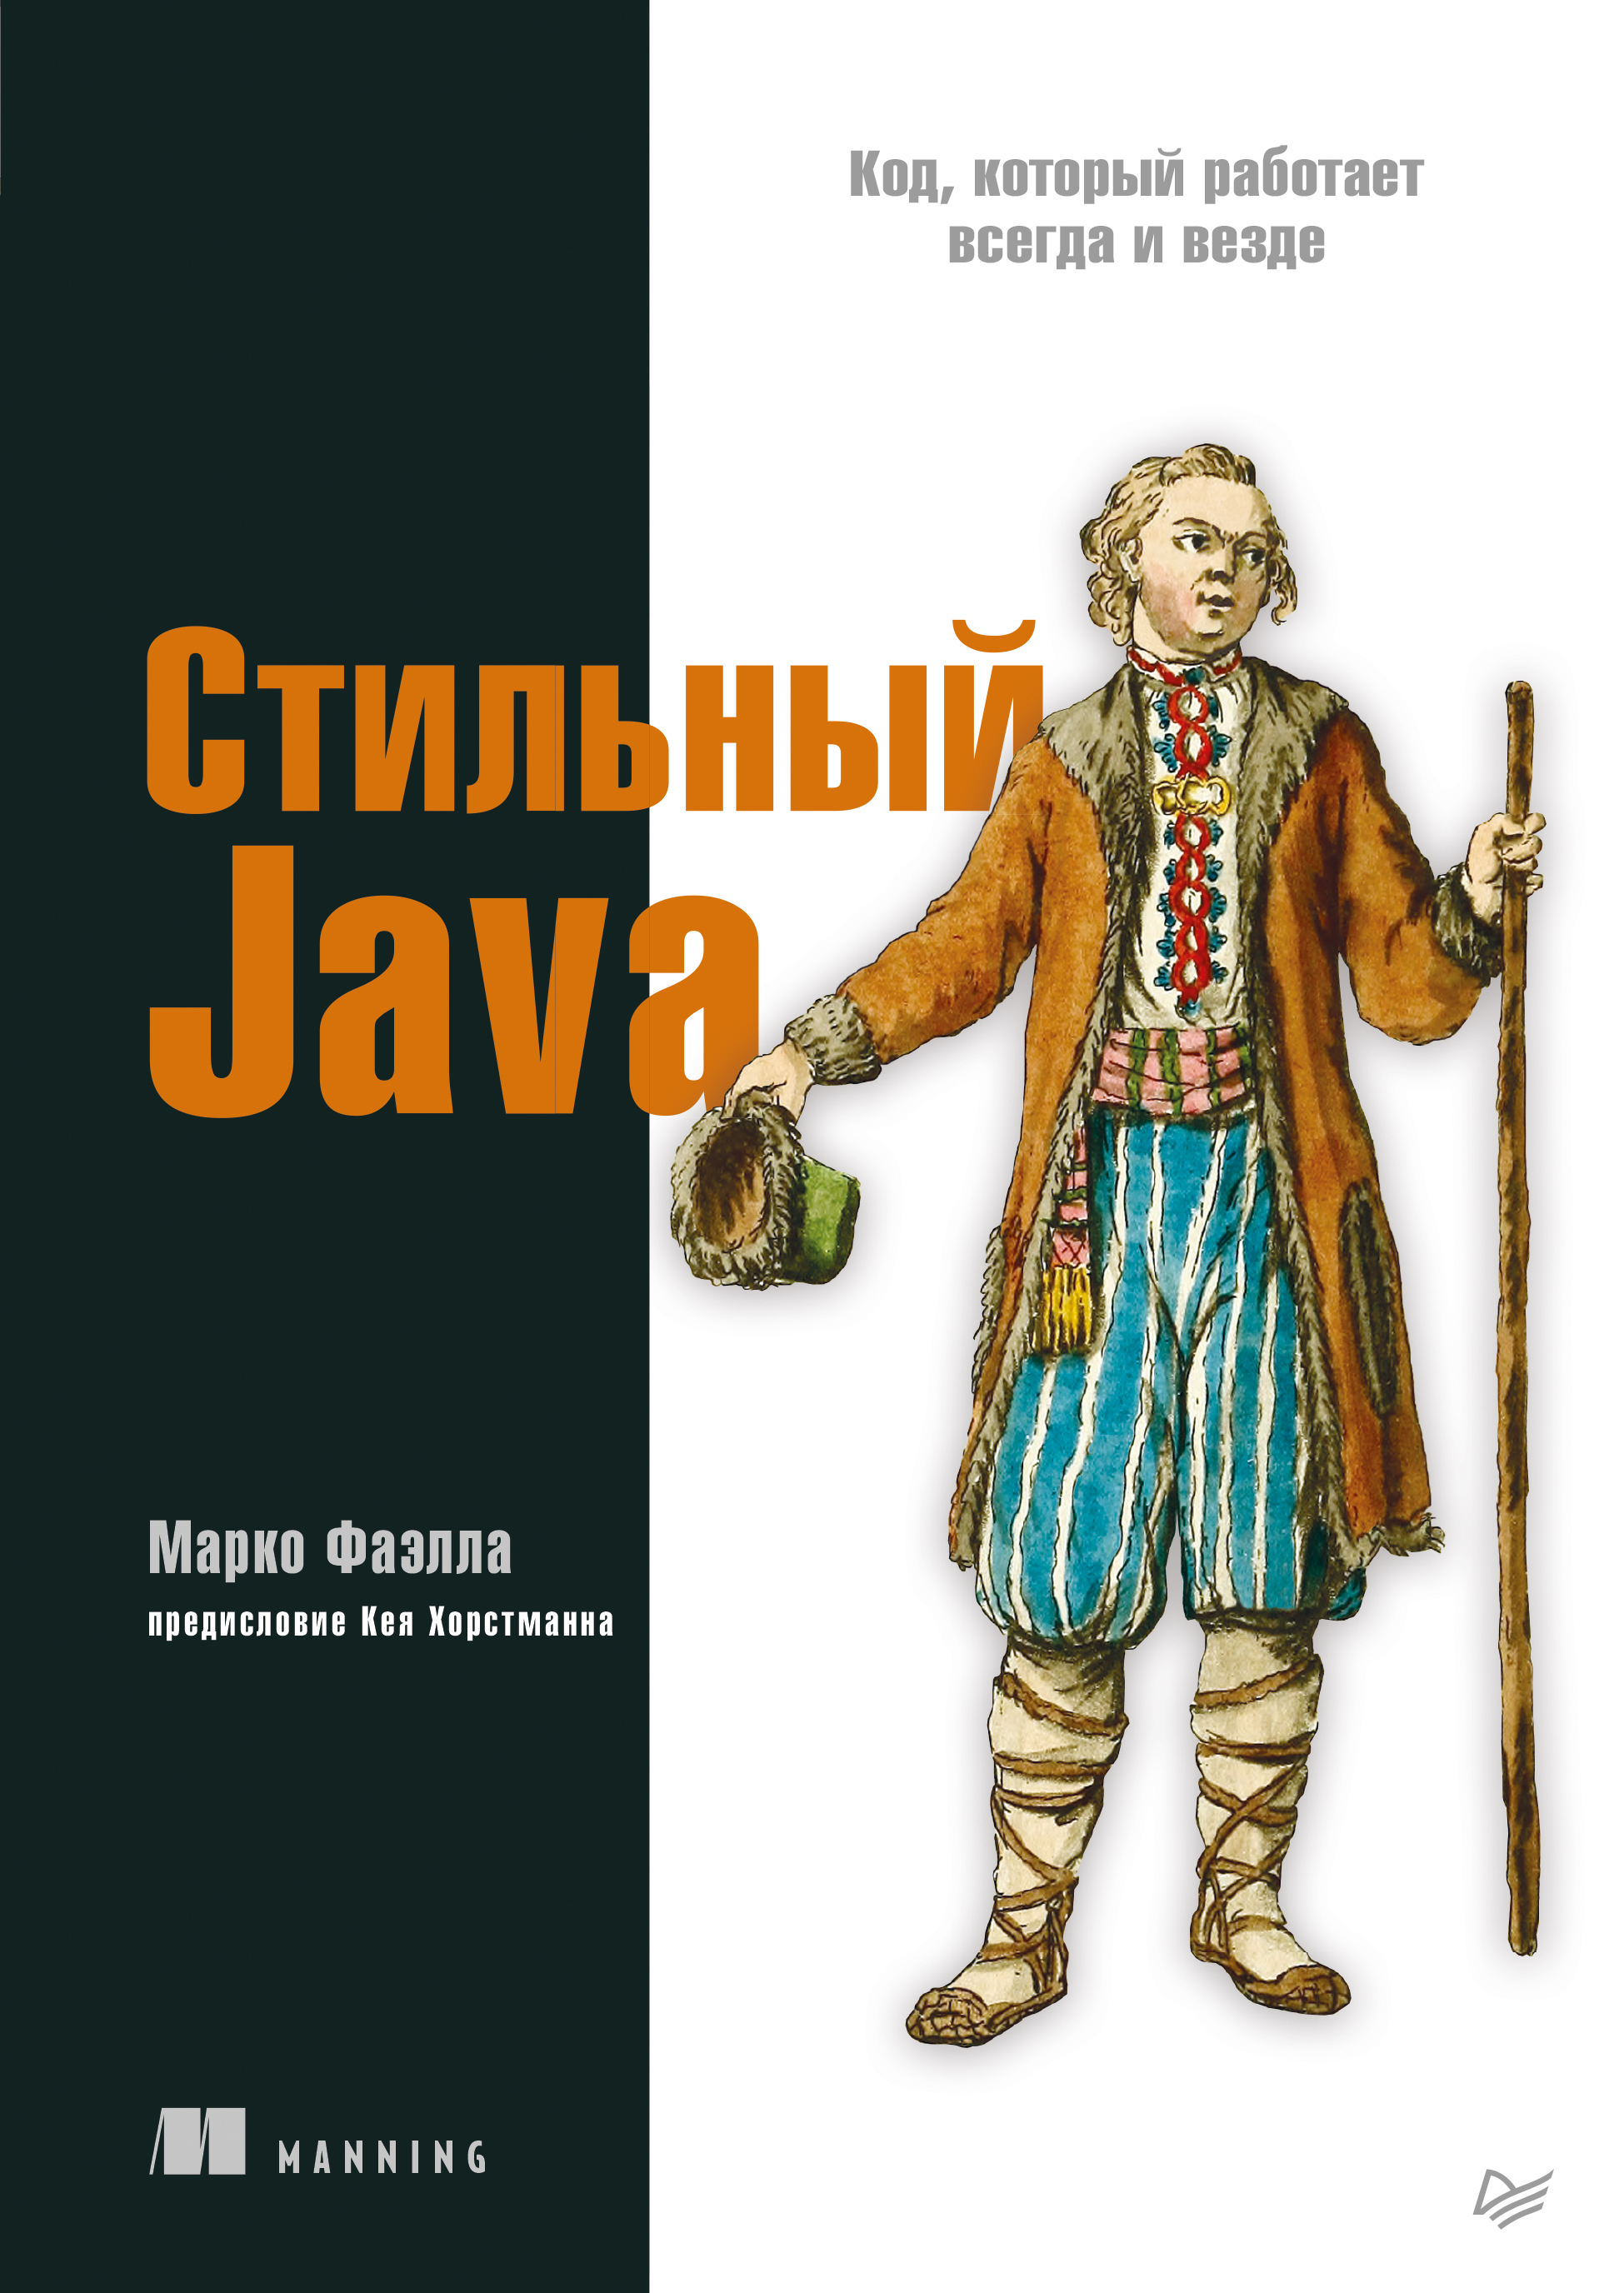 Книга Библиотека программиста (Питер) Стильный Java. Код, который работает всегда и везде созданная Марко Фаэлла, Е. А. Матвеев может относится к жанру зарубежная компьютерная литература, программирование. Стоимость электронной книги Стильный Java. Код, который работает всегда и везде с идентификатором 66828803 составляет 609.00 руб.